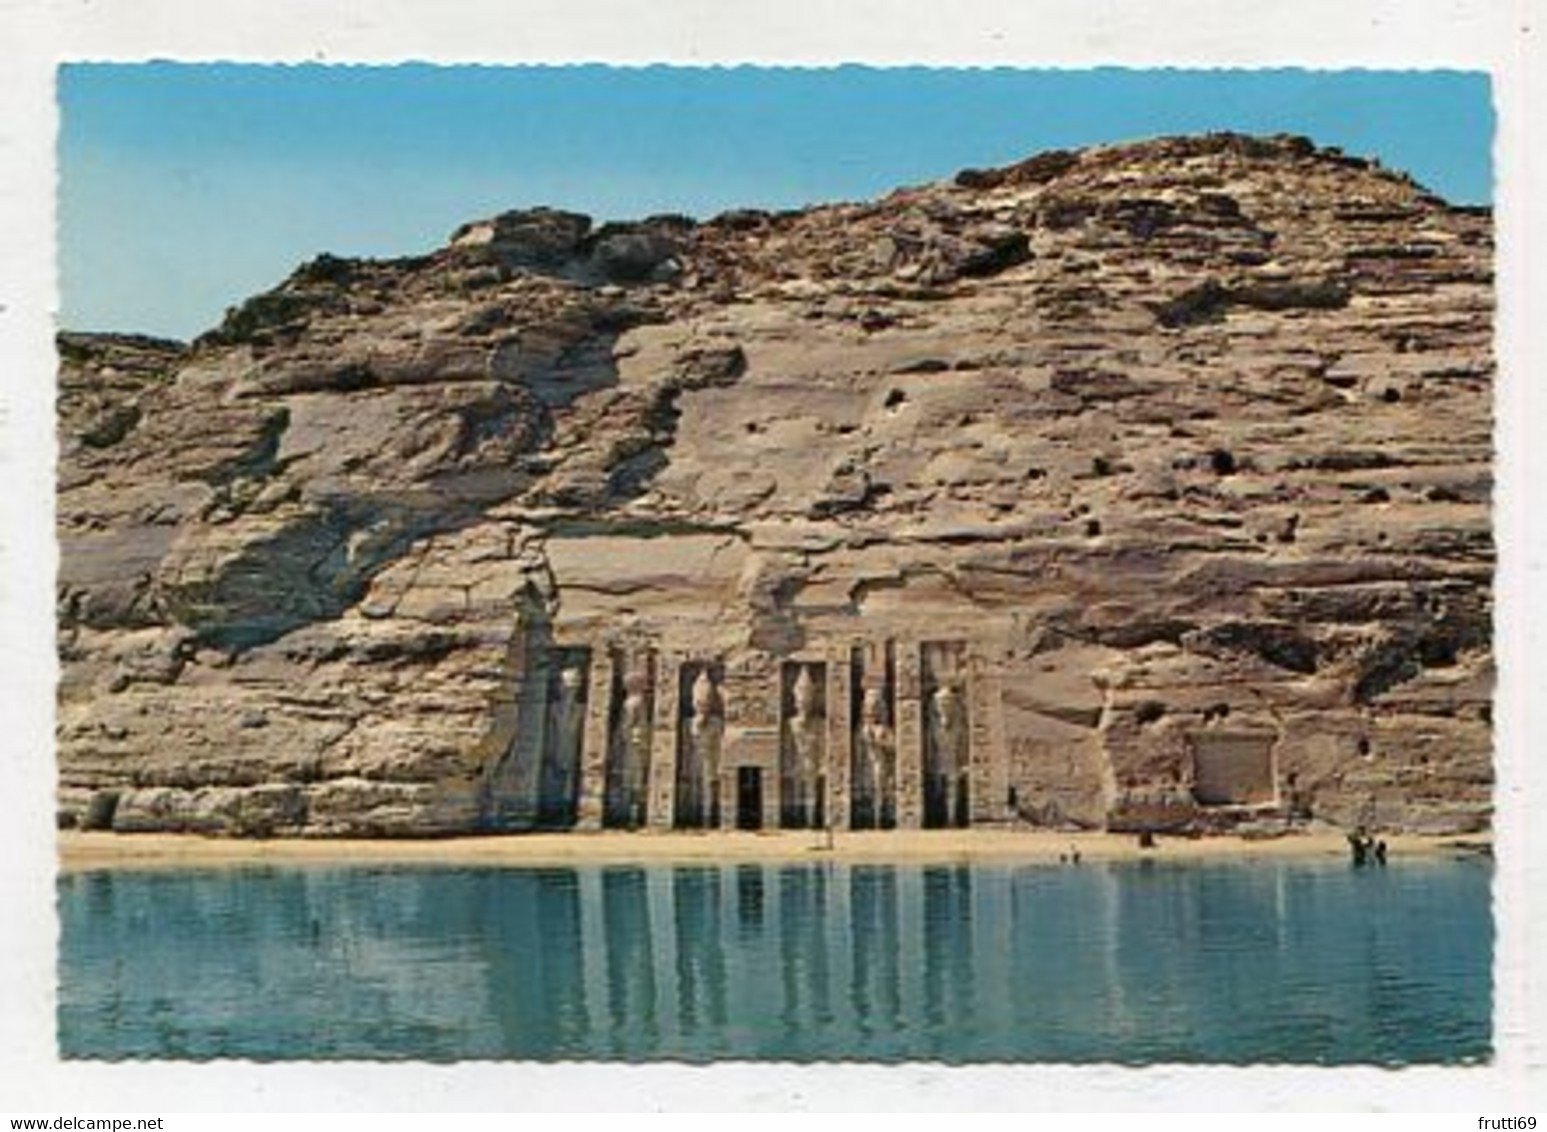 AK 057706 EGYPT - Abu Simbel - Small Rock Temple - Tempels Van Aboe Simbel